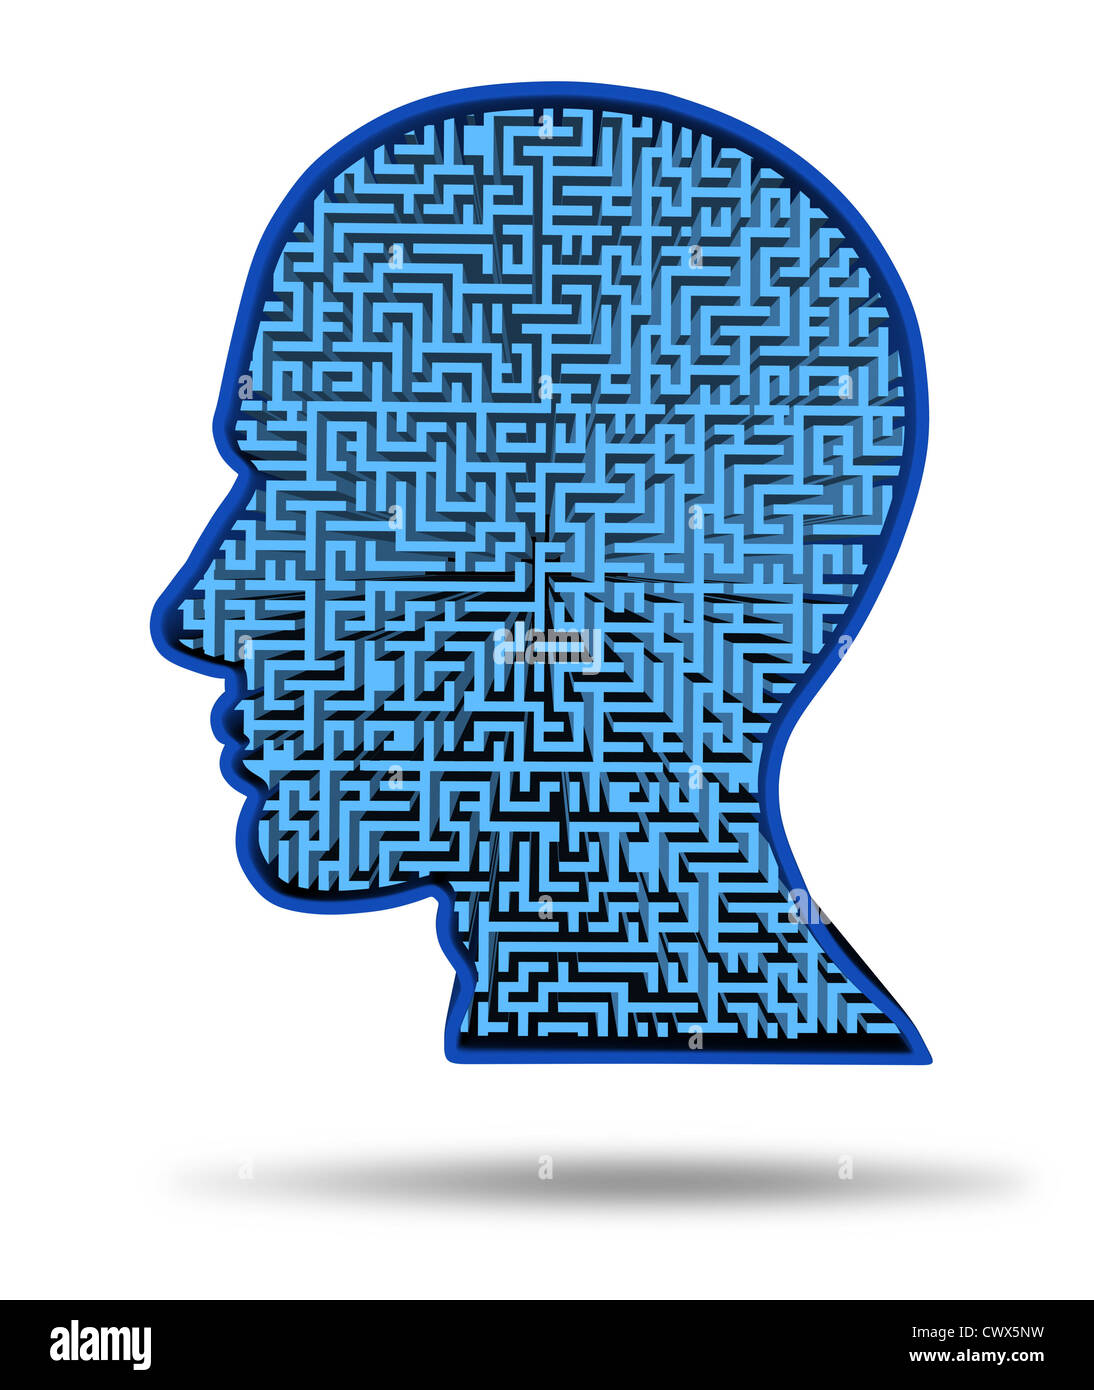 Suche nach einem Heilmittel für ein Gehirn-Krankheit-Symbol mit einem Irrgarten und Labyrinth in Form eines menschlichen Kopfes als Konzept der Forschung in t Stockfoto